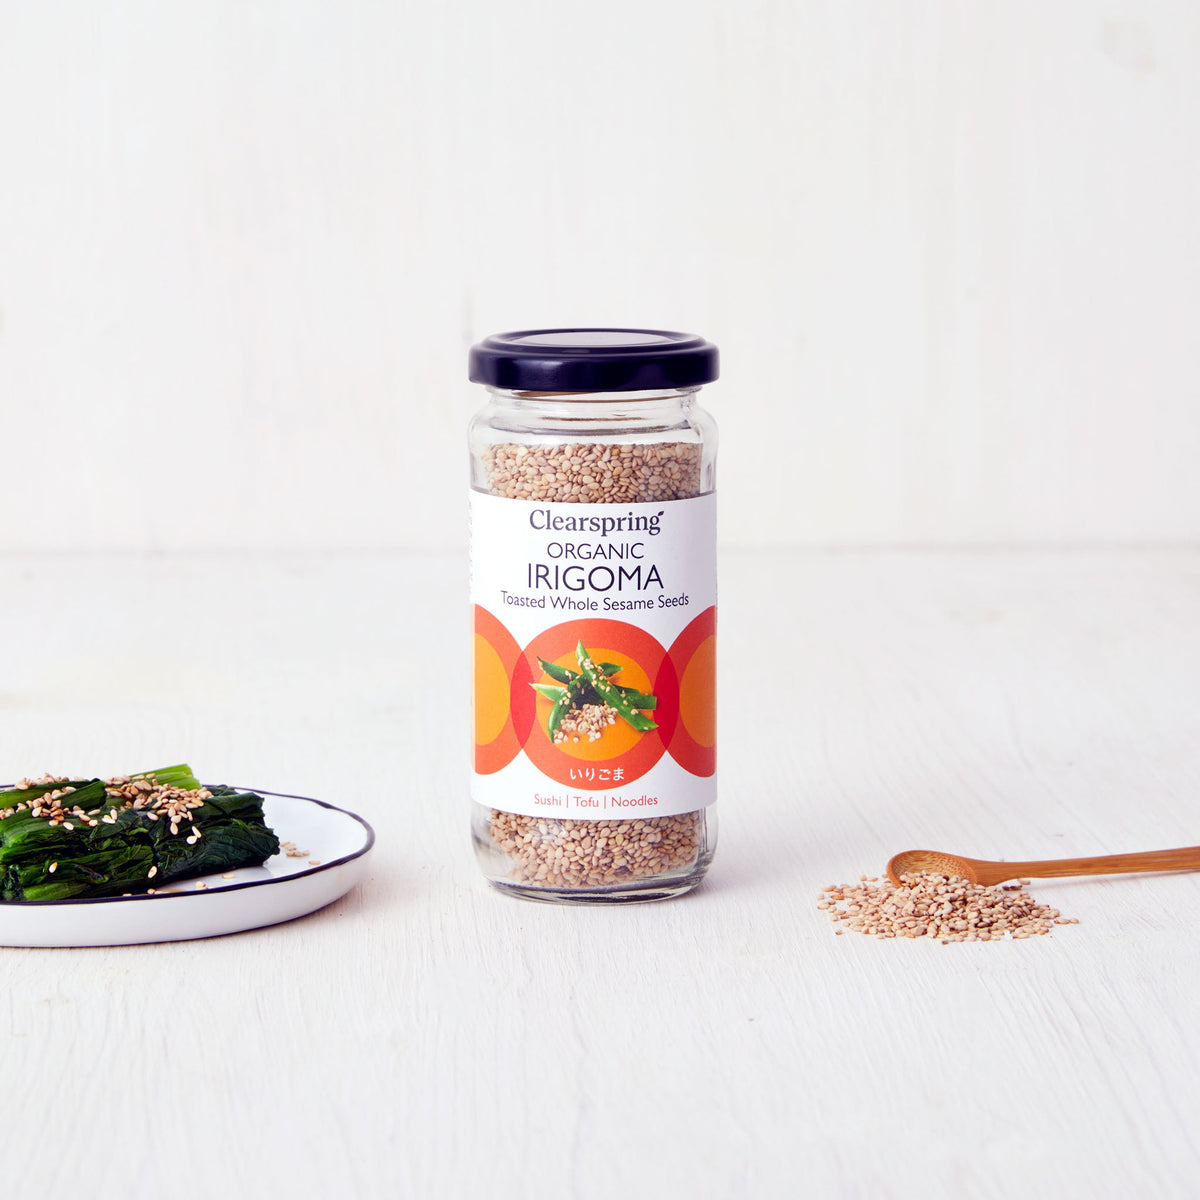 Organic Irigoma - Toasted Whole Sesame Seeds (6 Pack)